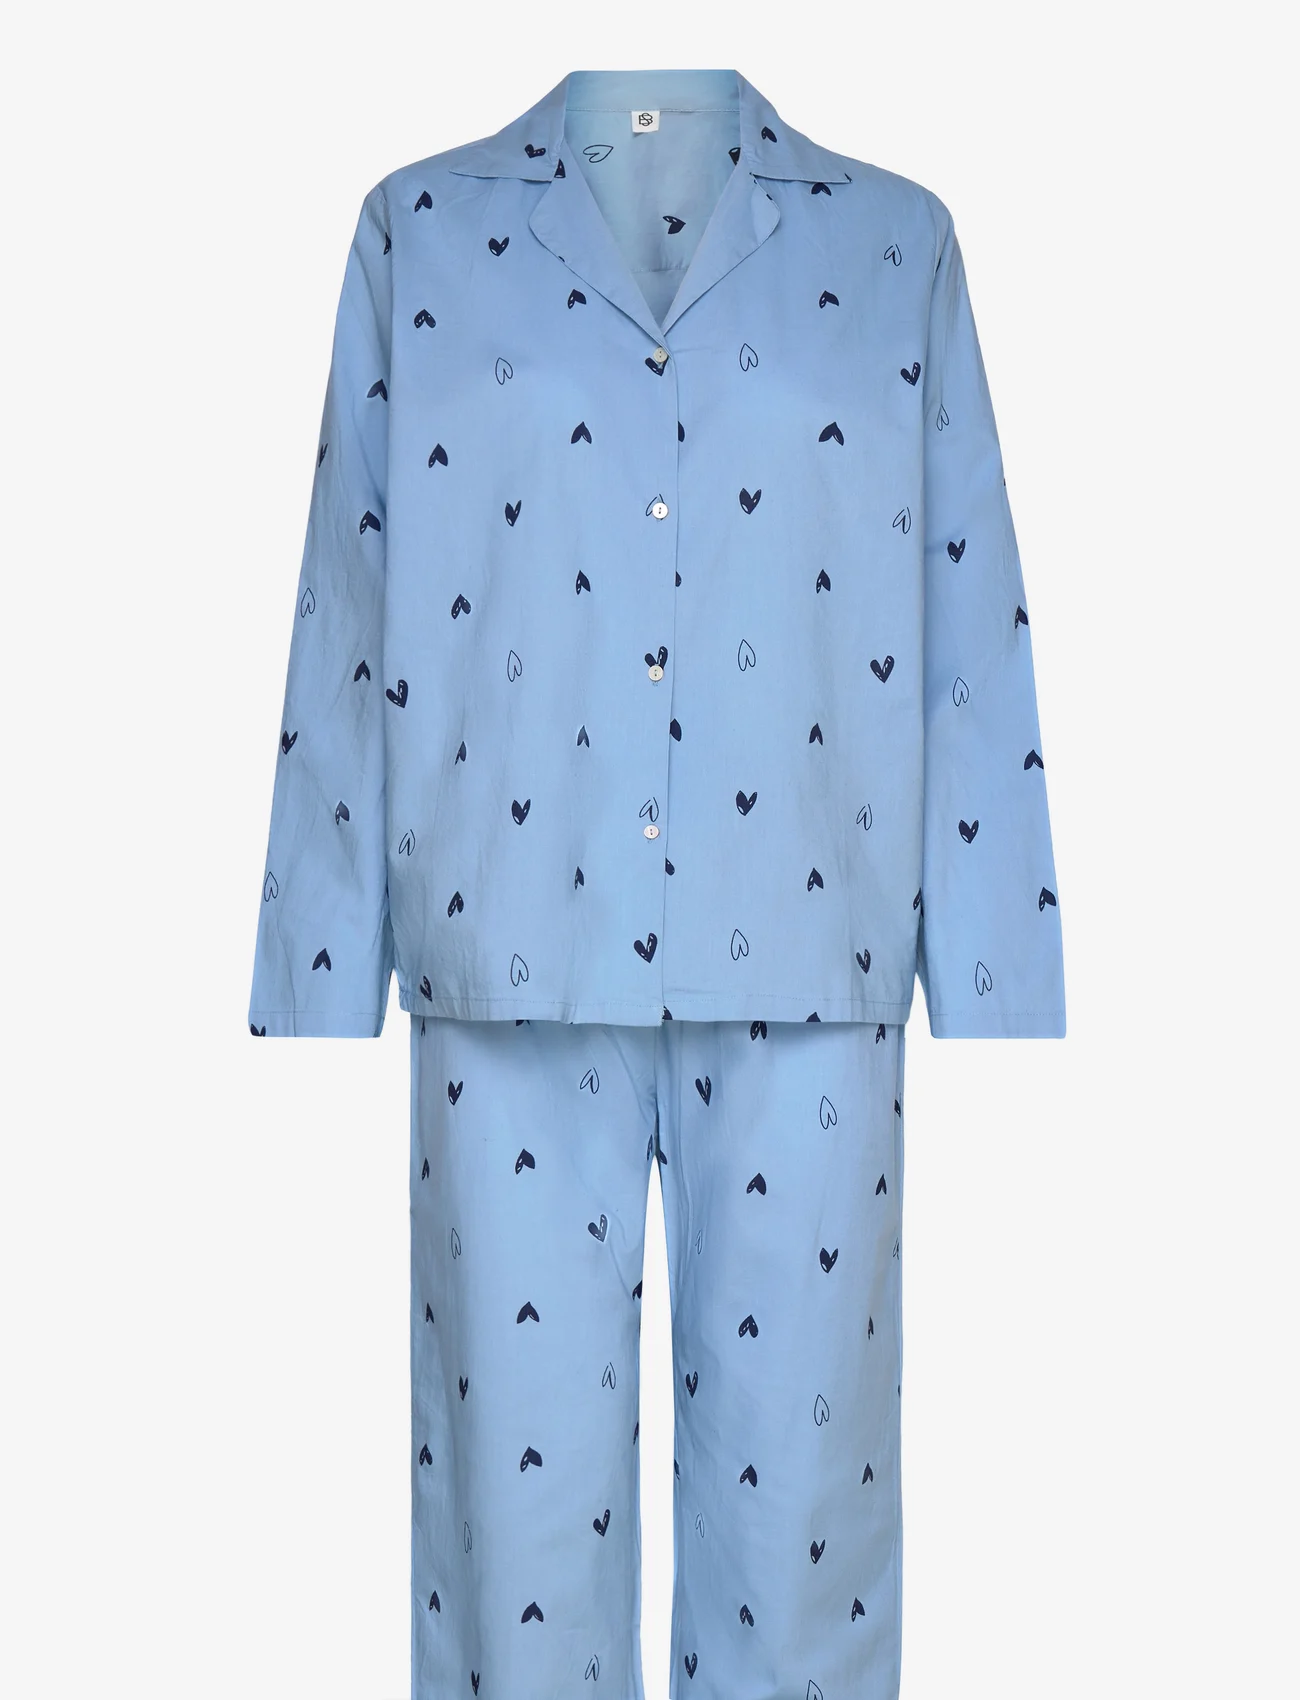 Becksöndergaard - Archie Pyjamas Set - fødselsdagsgaver - vista blue - 0